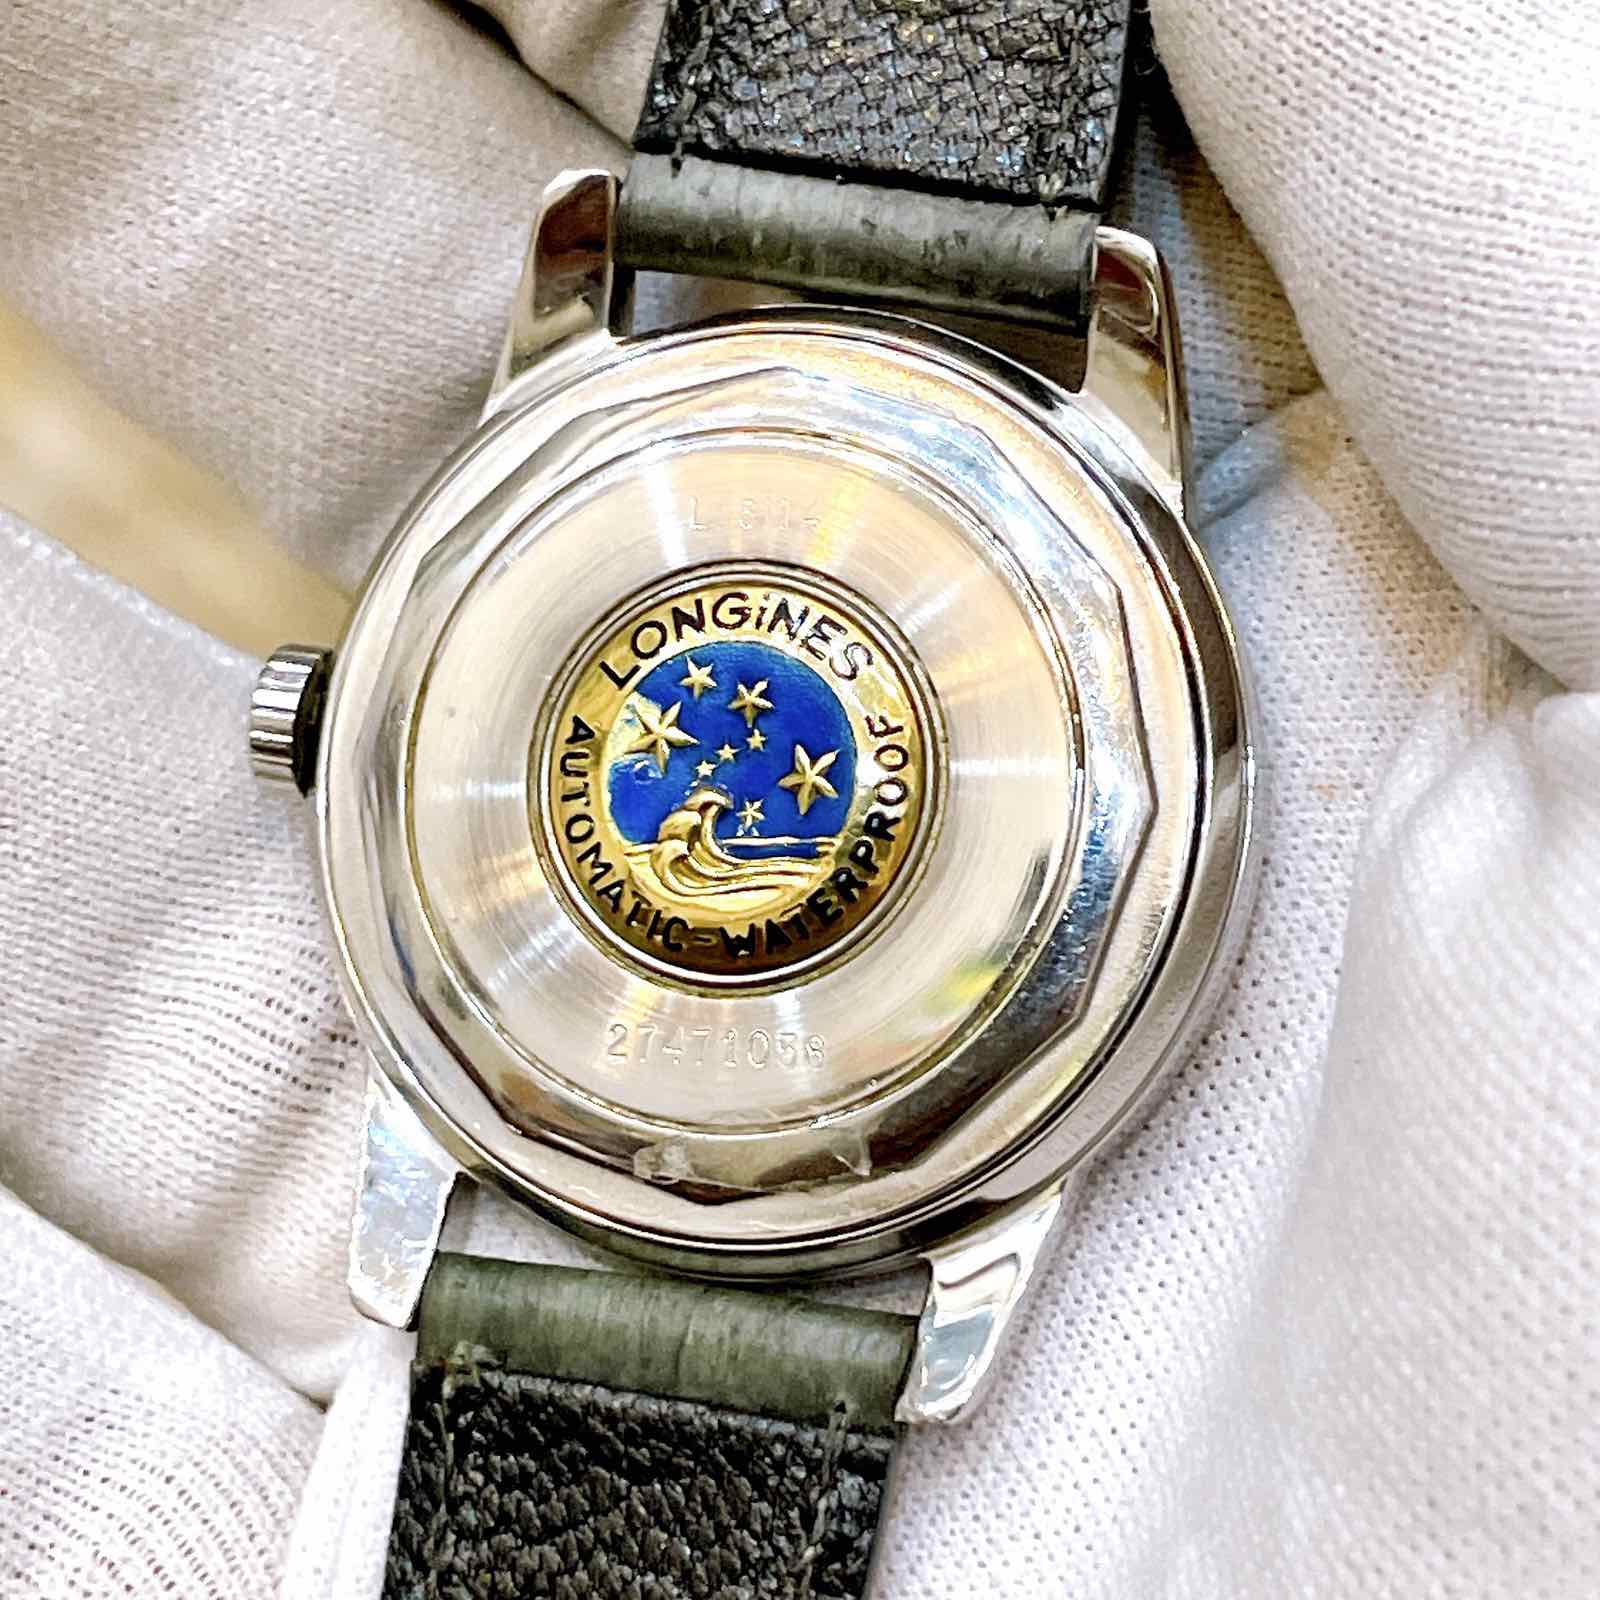 Đồng hồ cổ Longines Conquest Automatic chính hãng thụy Sĩ